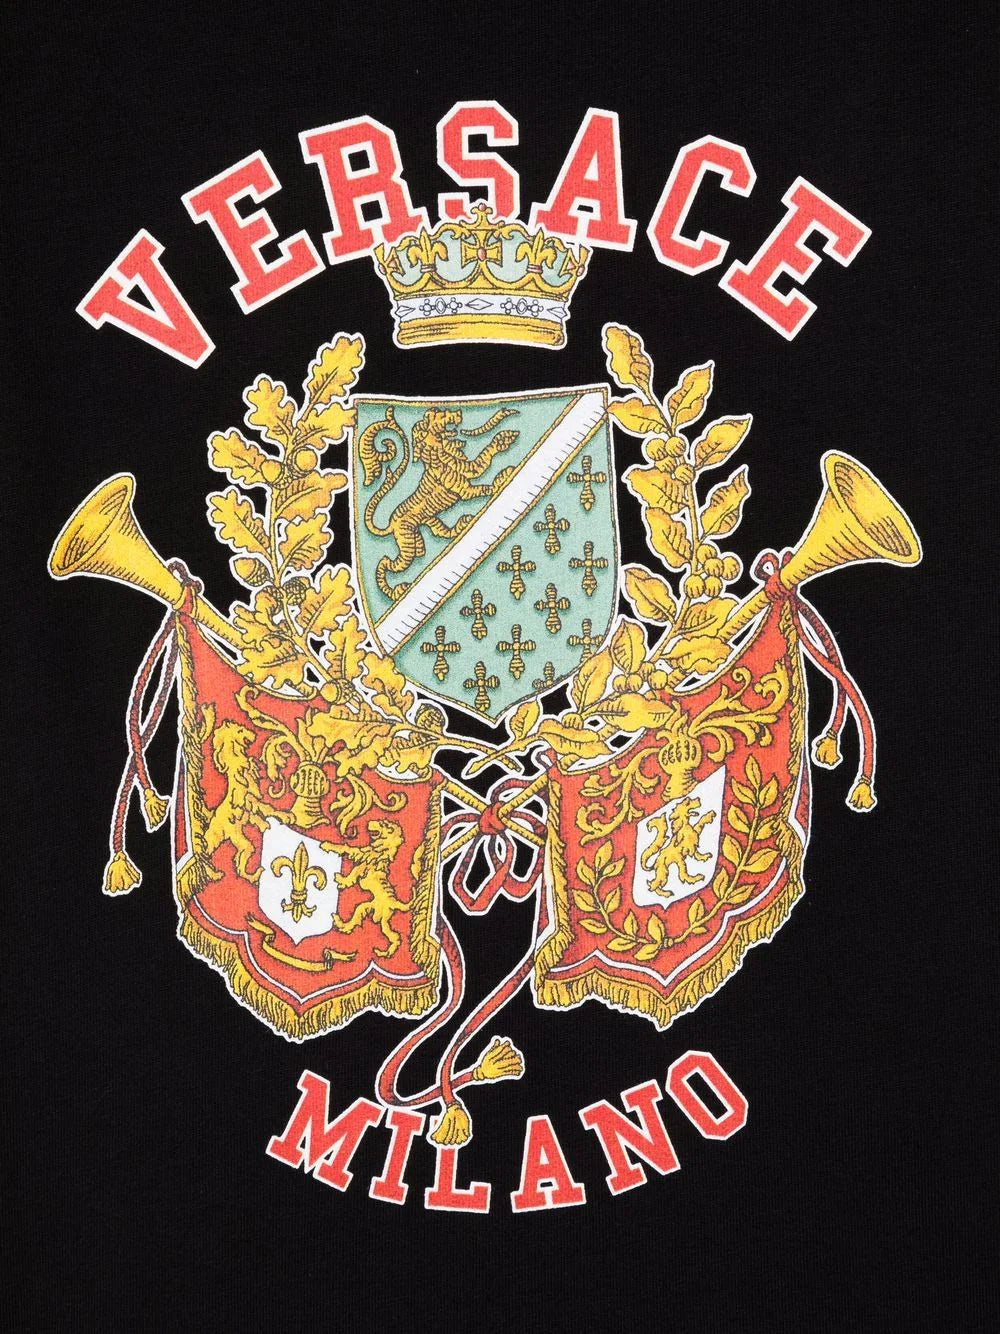 Versace Kids Versace Logo Kids T-Shirt for Boys